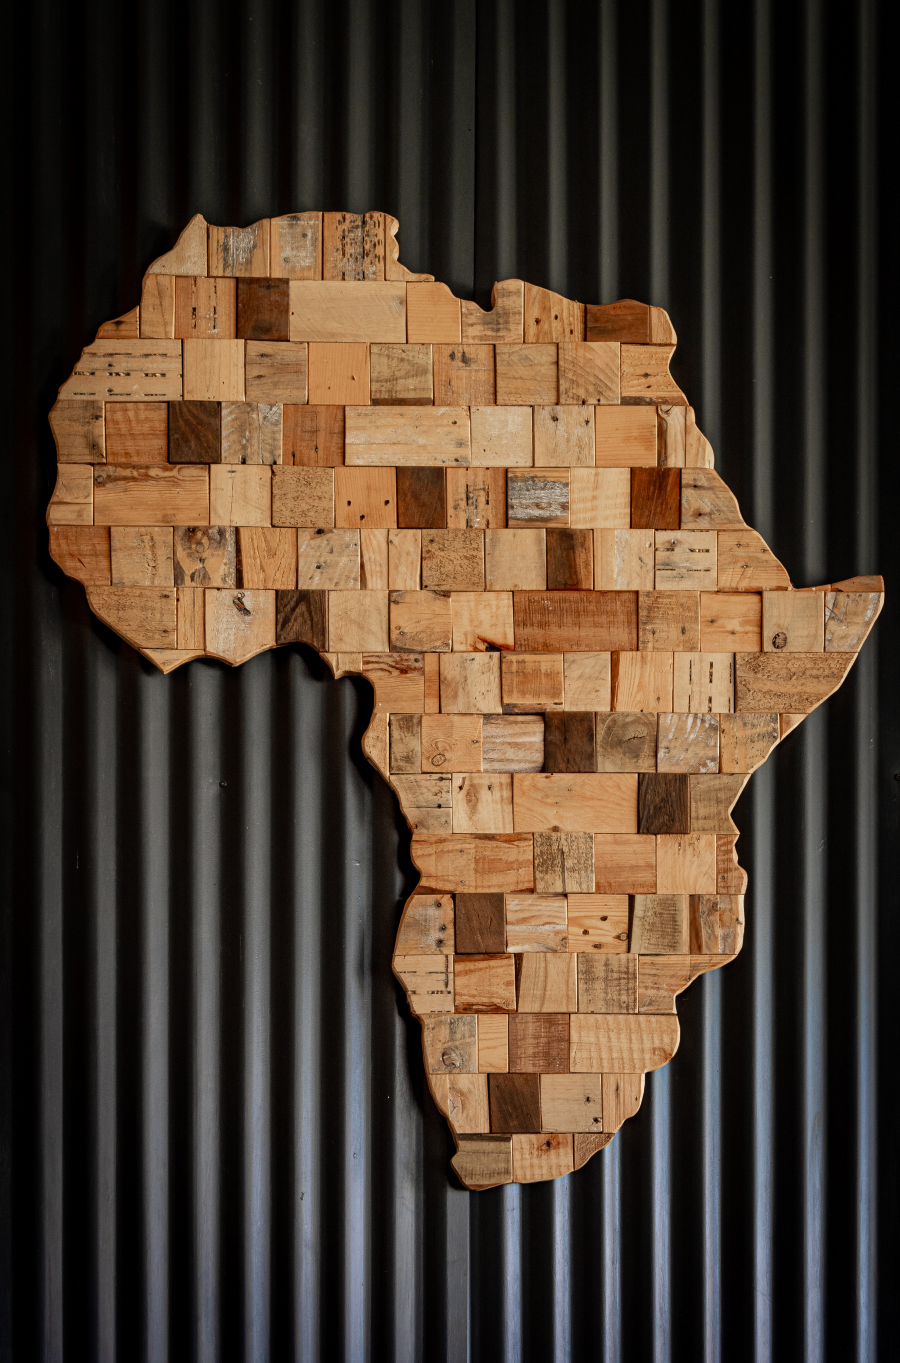 Emmanuel Macron et la dette africaine : quelques clefs de compréhension